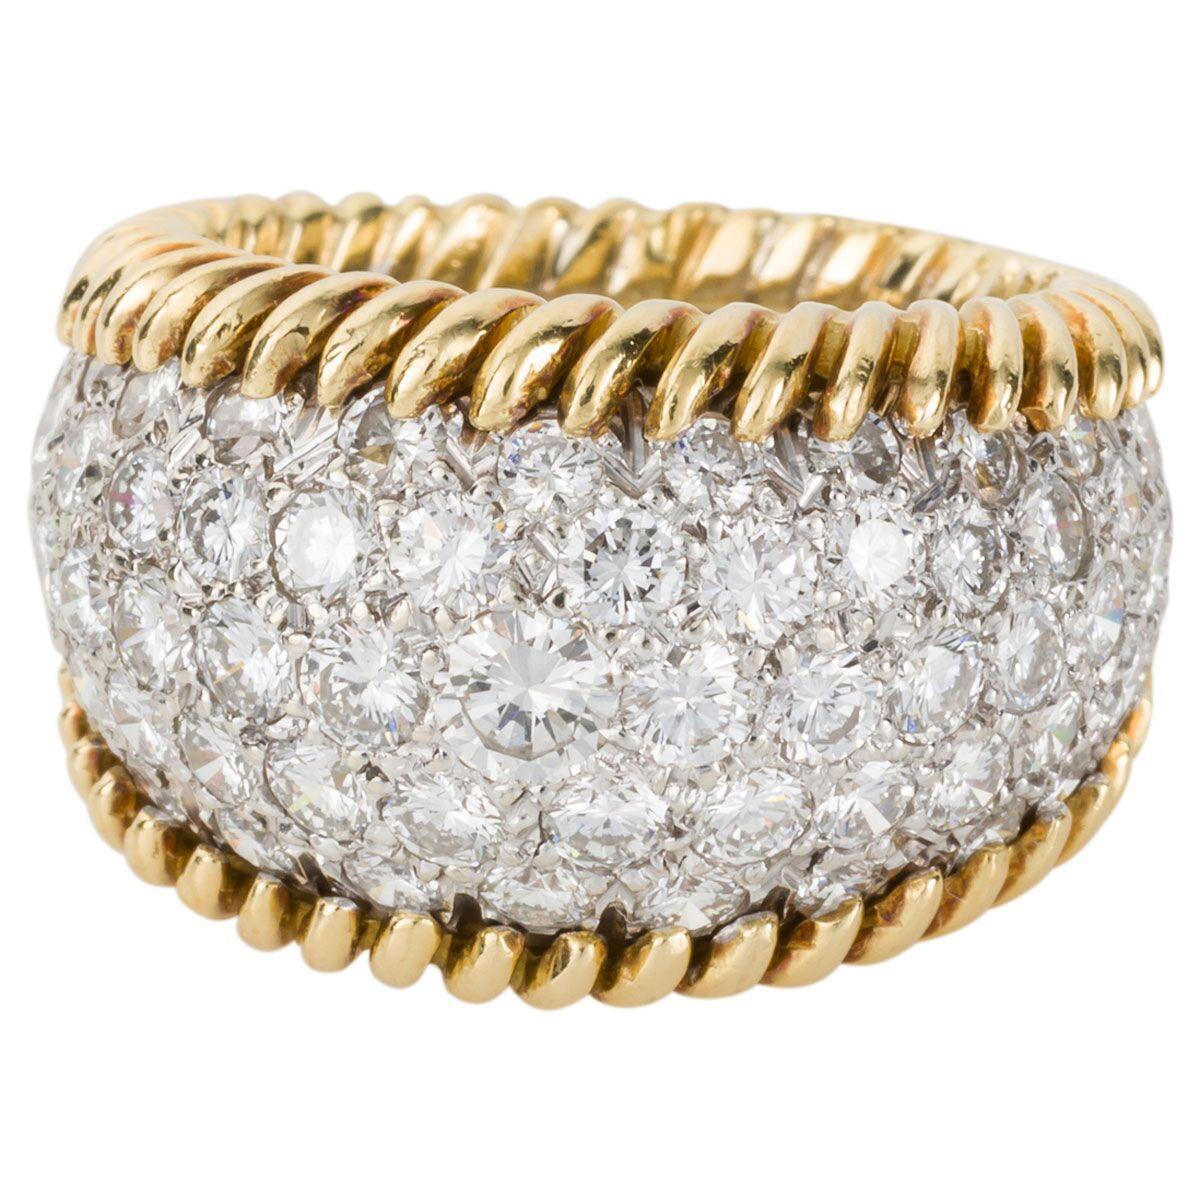 3.00 Carat Diamond Pave Set & 18 Karat Yellow Gold Ring - Ring Size 5.5 1